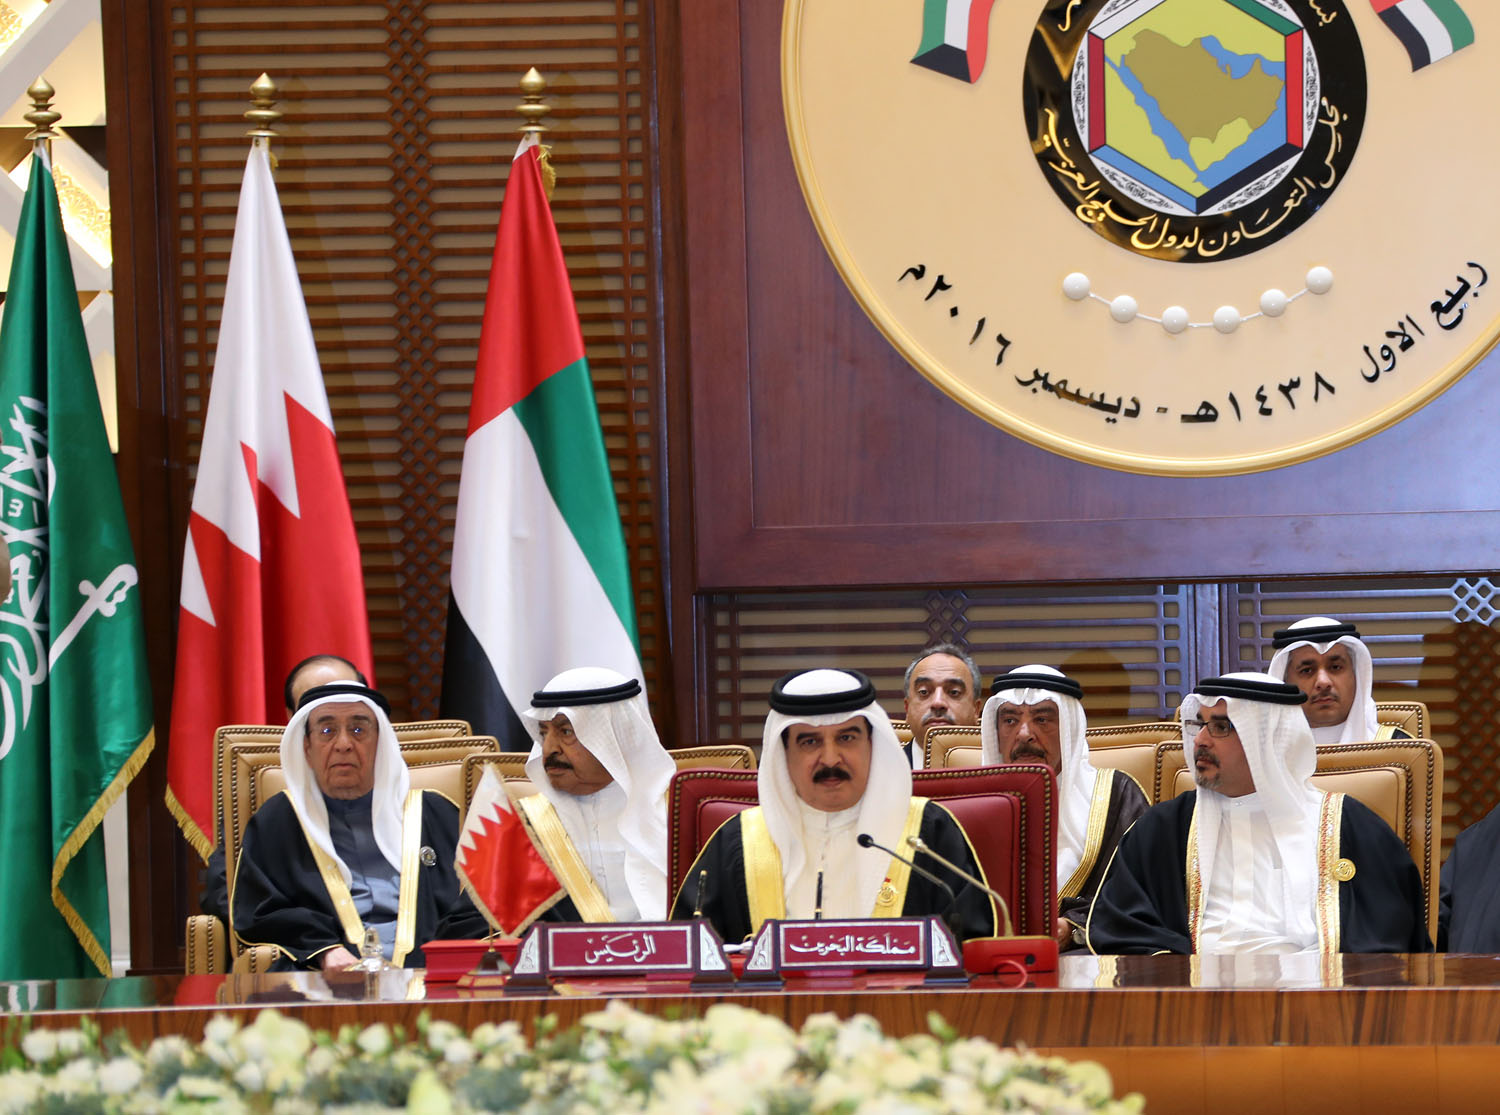 ملك البحرين: القمة تحمل دلالات بالغة الأهمية ونتطلع لآفاق أرحب مع بريطانيا